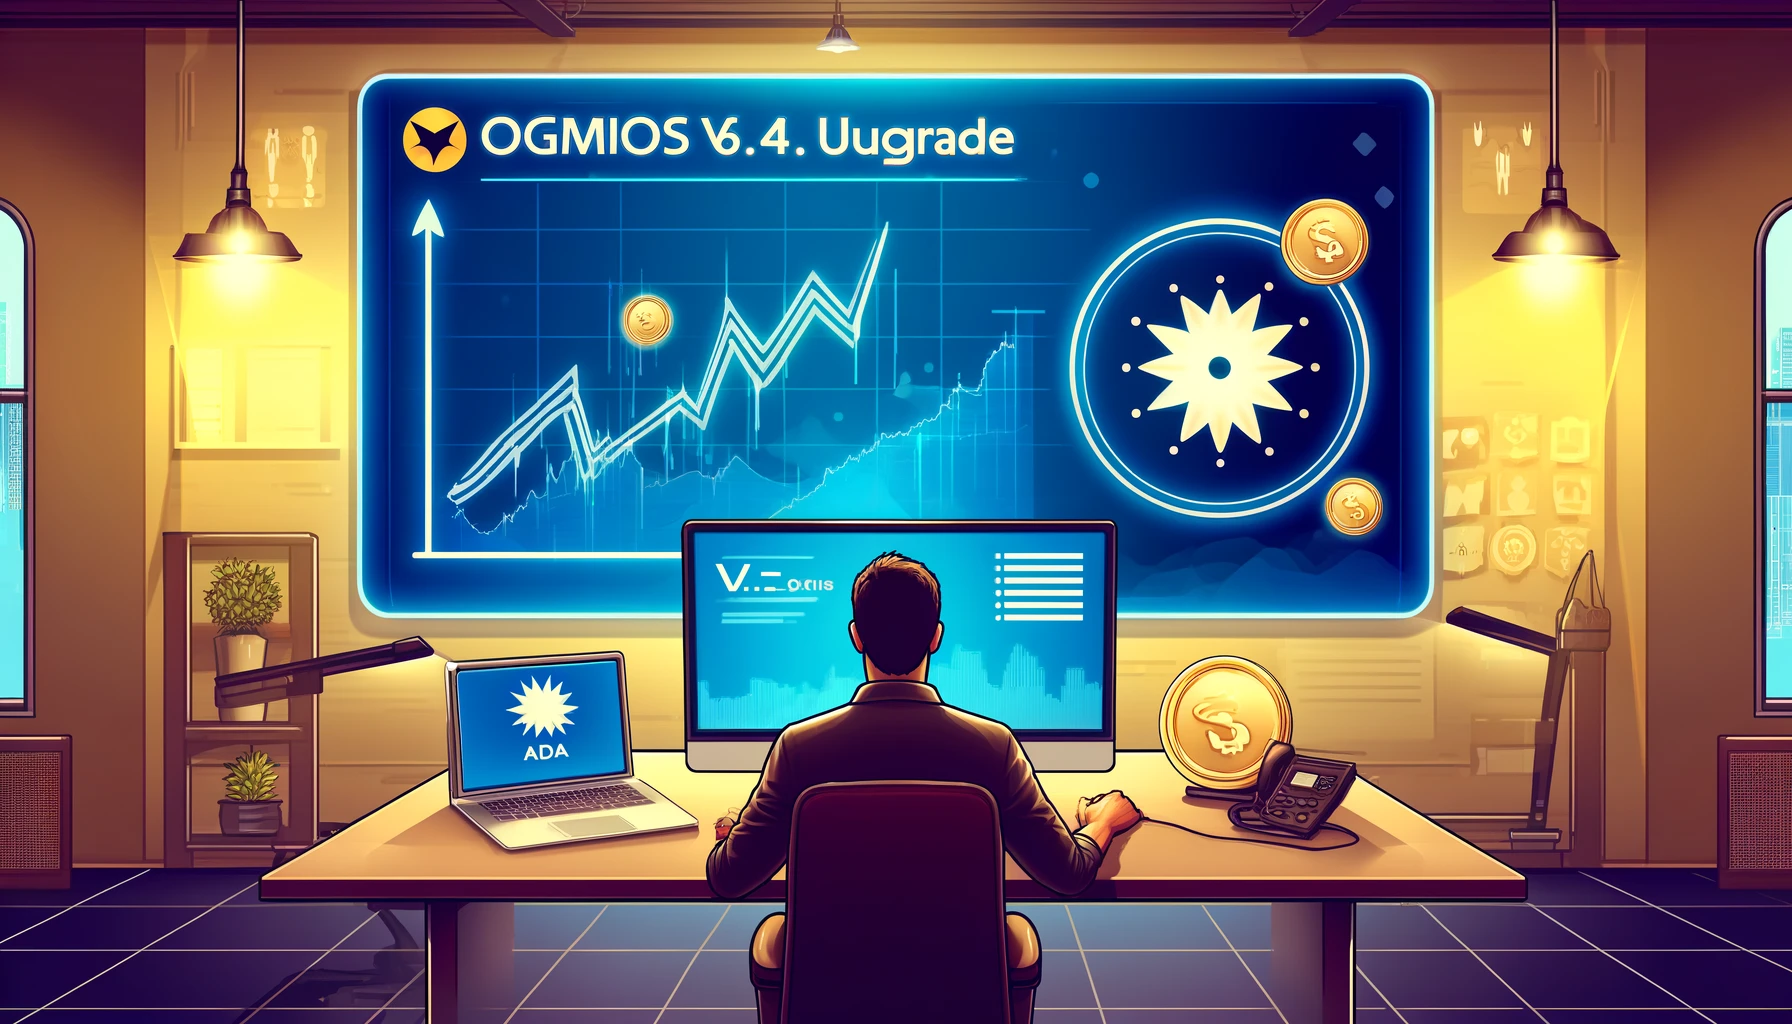 ADA Down Despite Cardano's Launch of ogmios v6.4.0 Upgrade